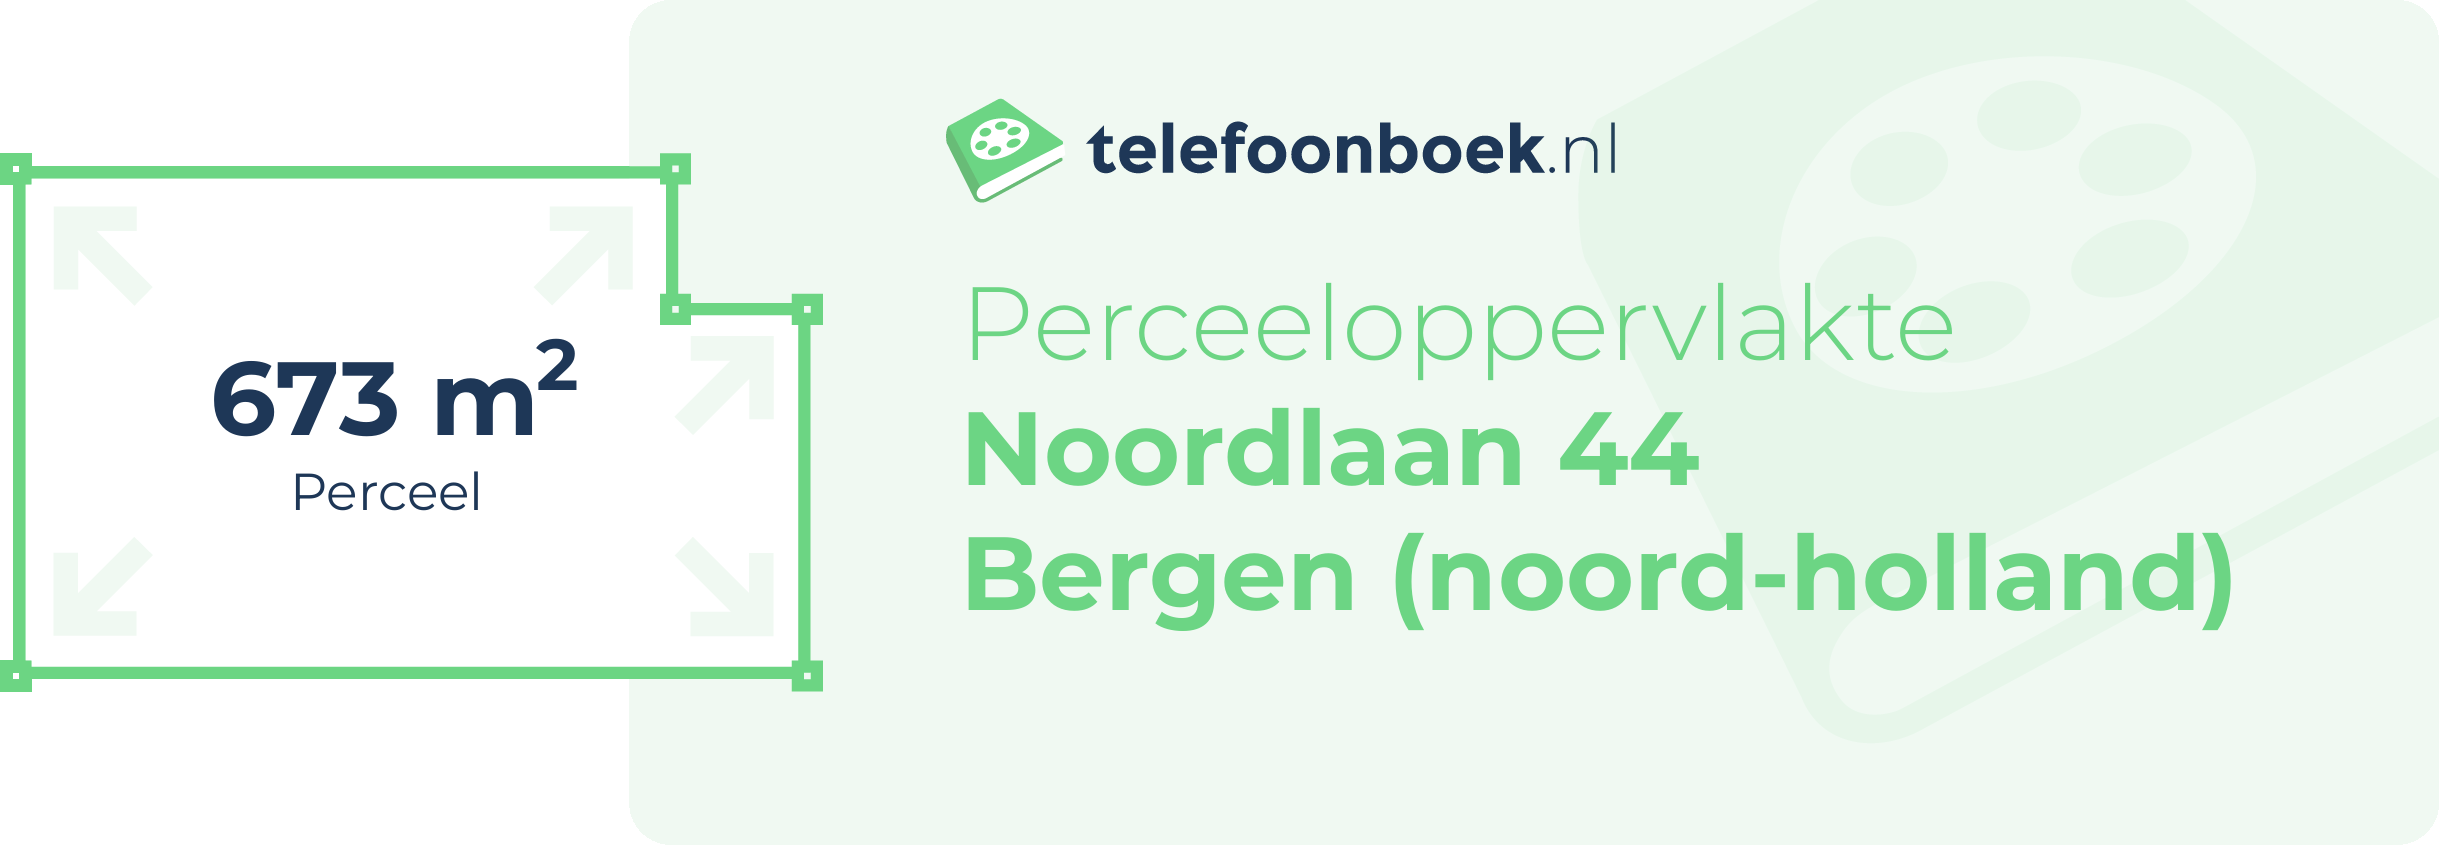 Perceeloppervlakte Noordlaan 44 Bergen (Noord-Holland)